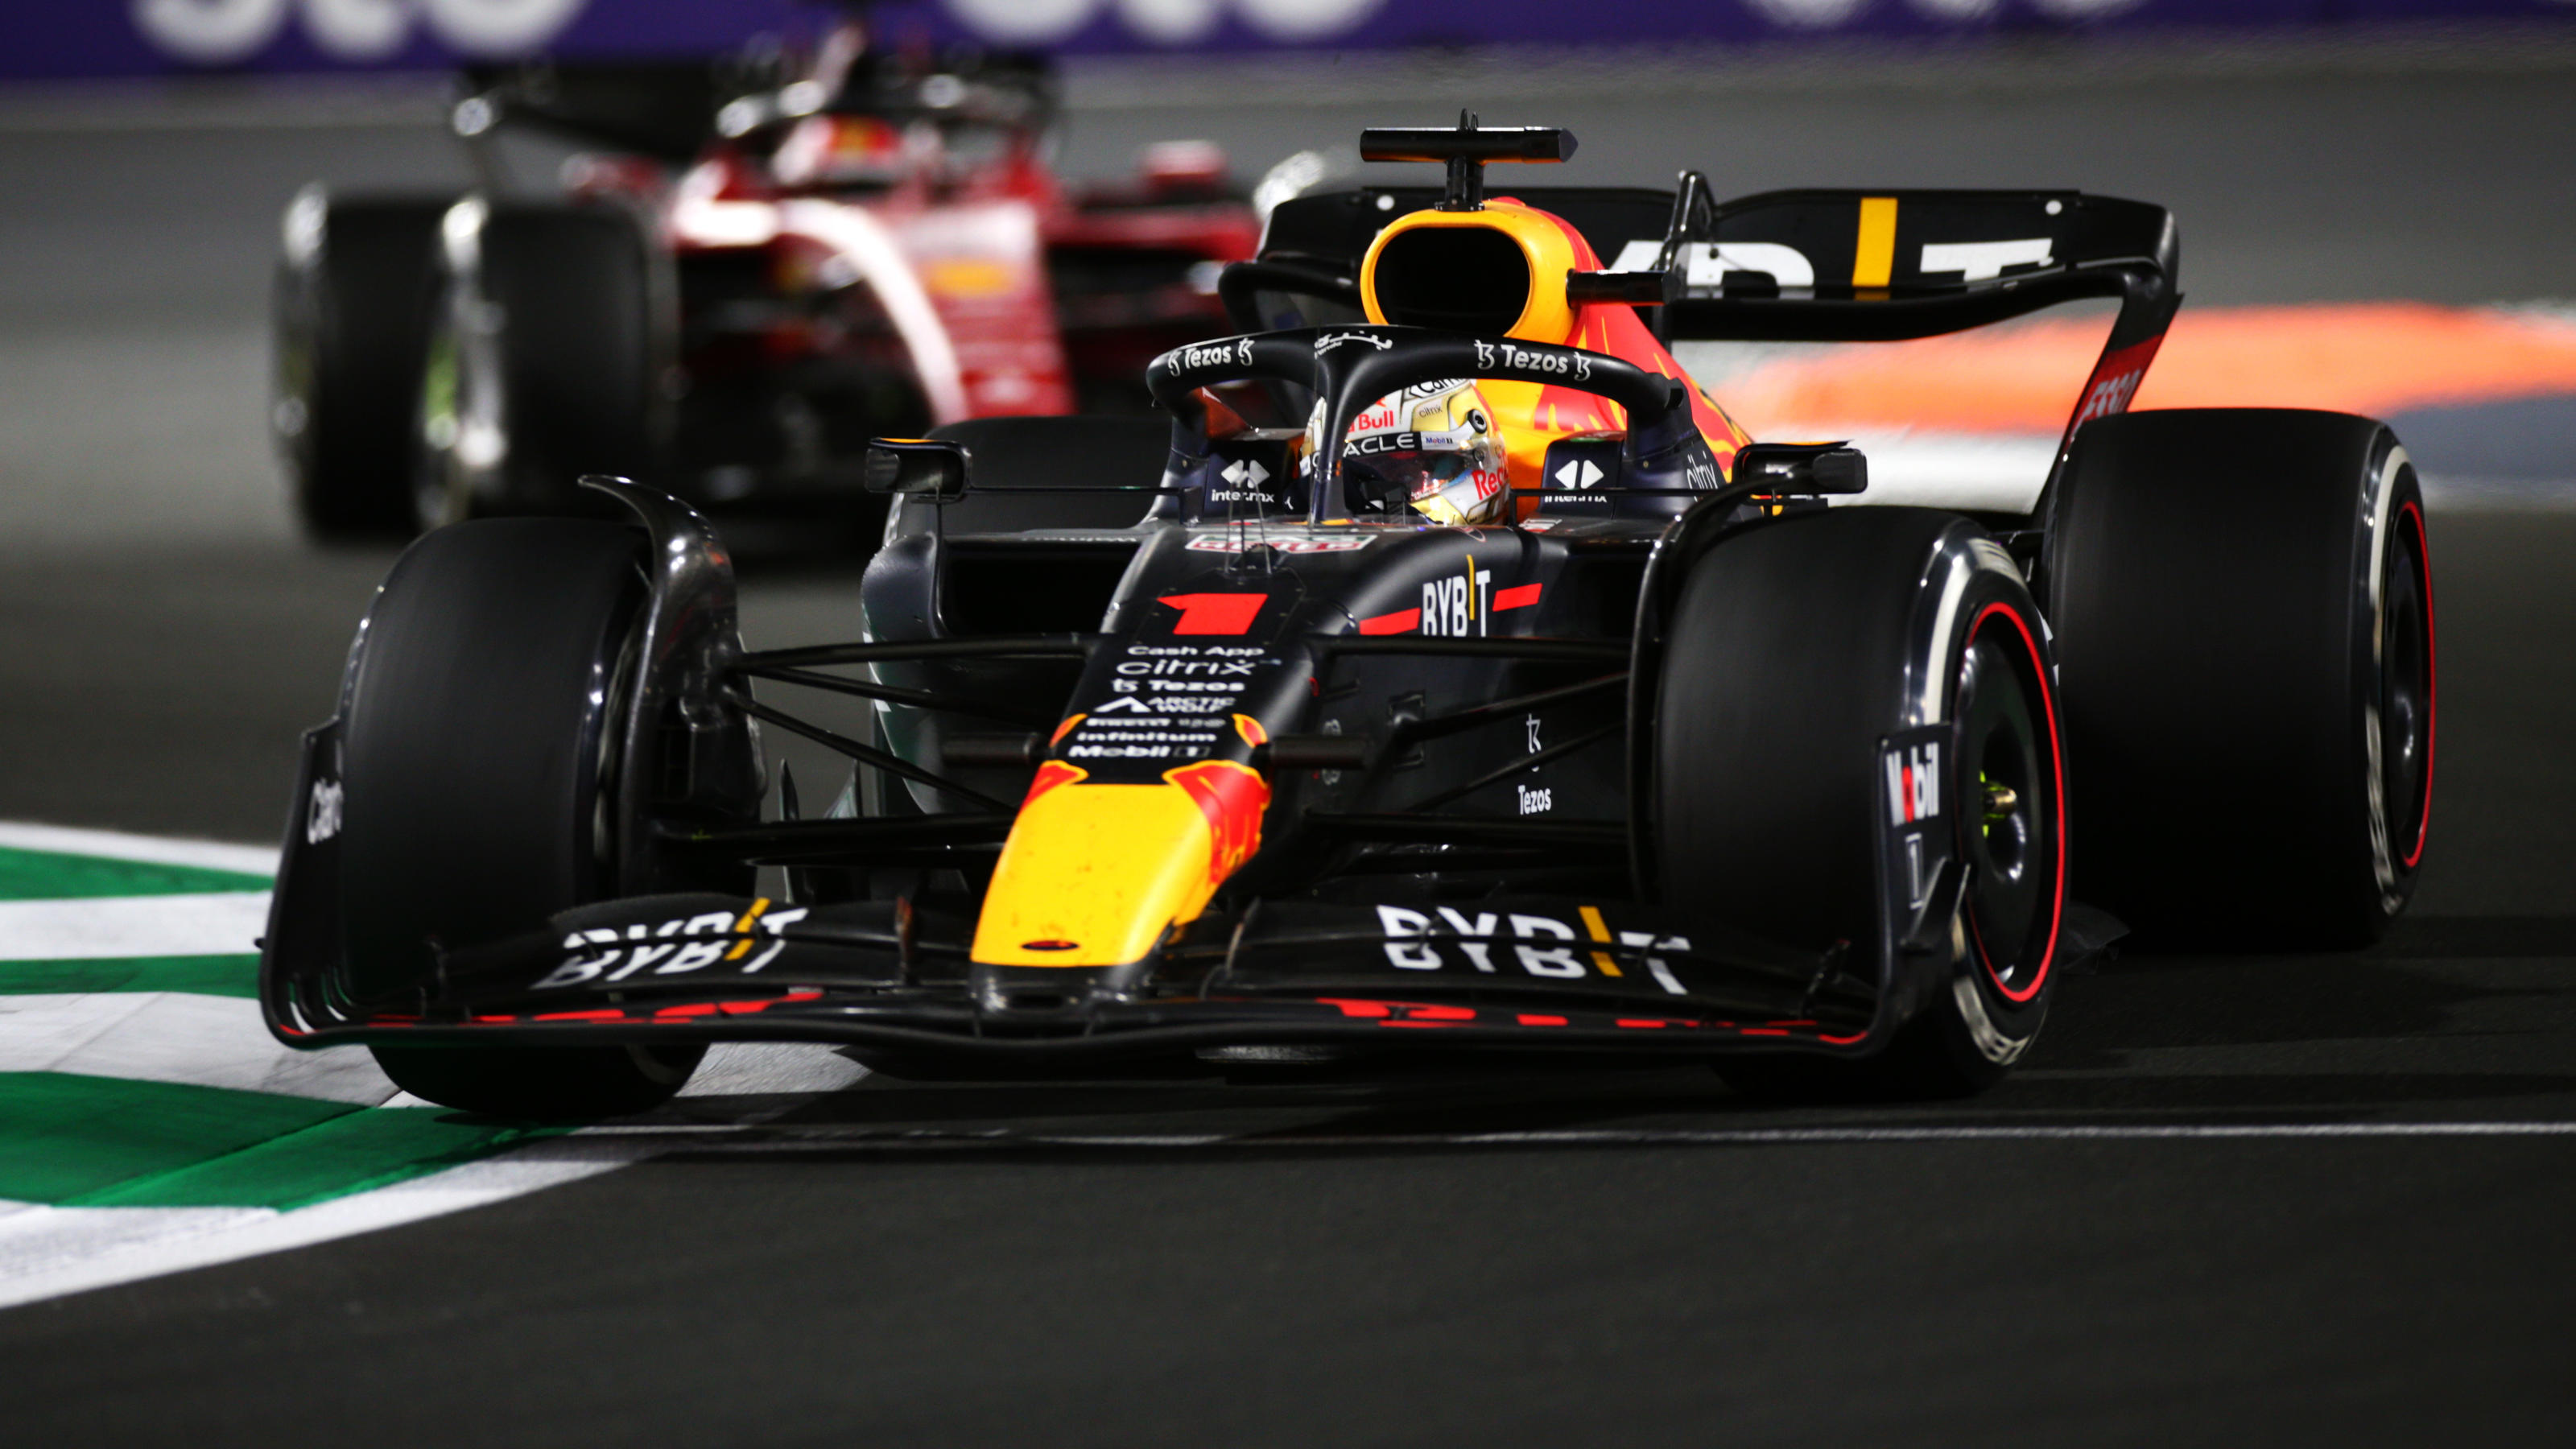 Formel 1 in Saudi-Arabien Max Verstappen schlägt knallhart zurück und siegt vor Charles Leclerc